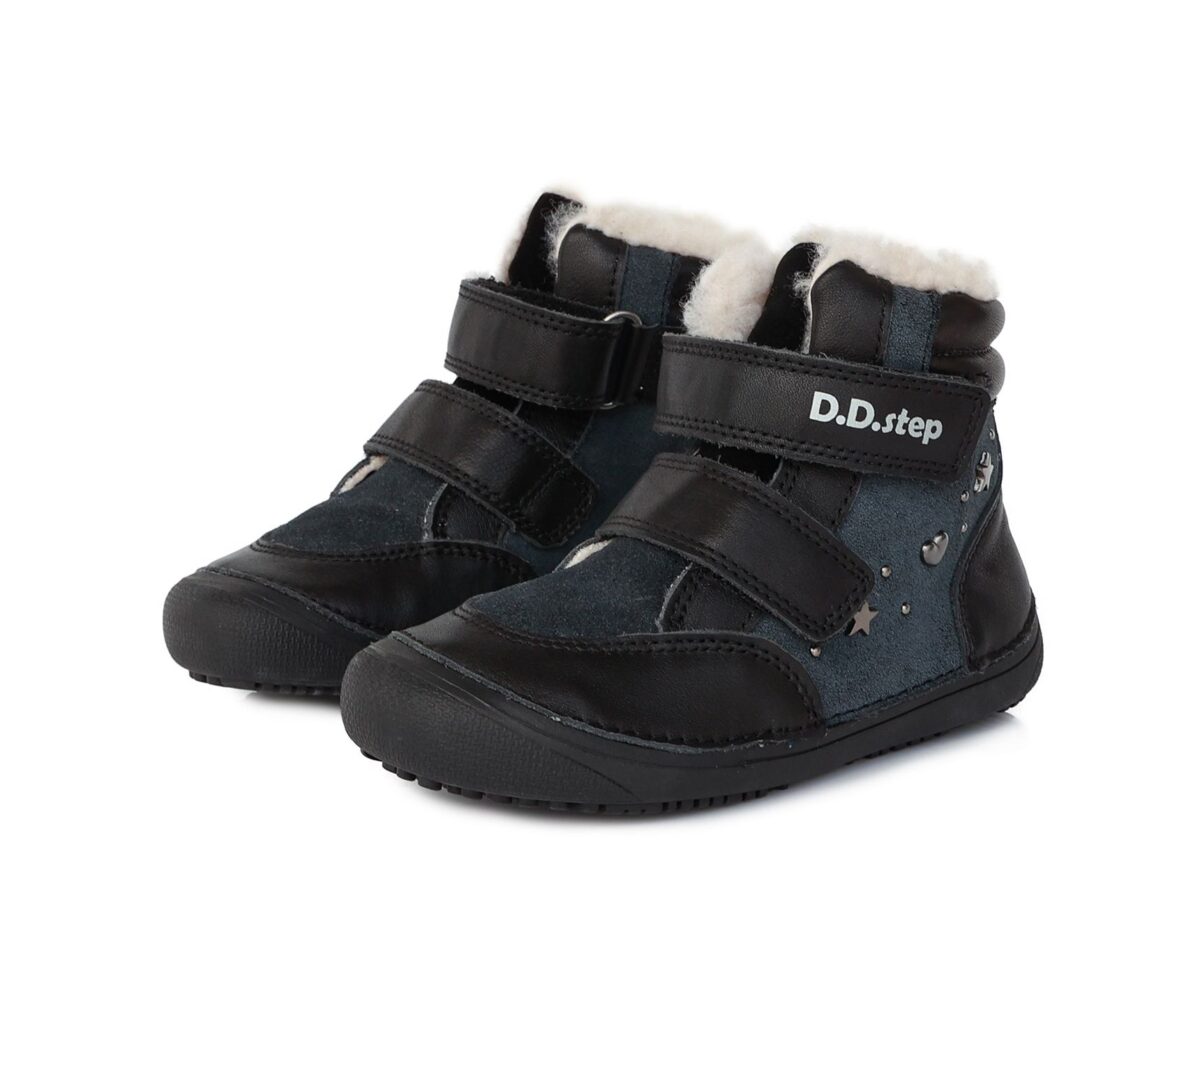 D.D.Step barefoot talvesaapad Black- Süda/Täht 063 D.D.Step - HellyK - Kvaliteetsed lasteriided, villariided, barefoot jalatsid